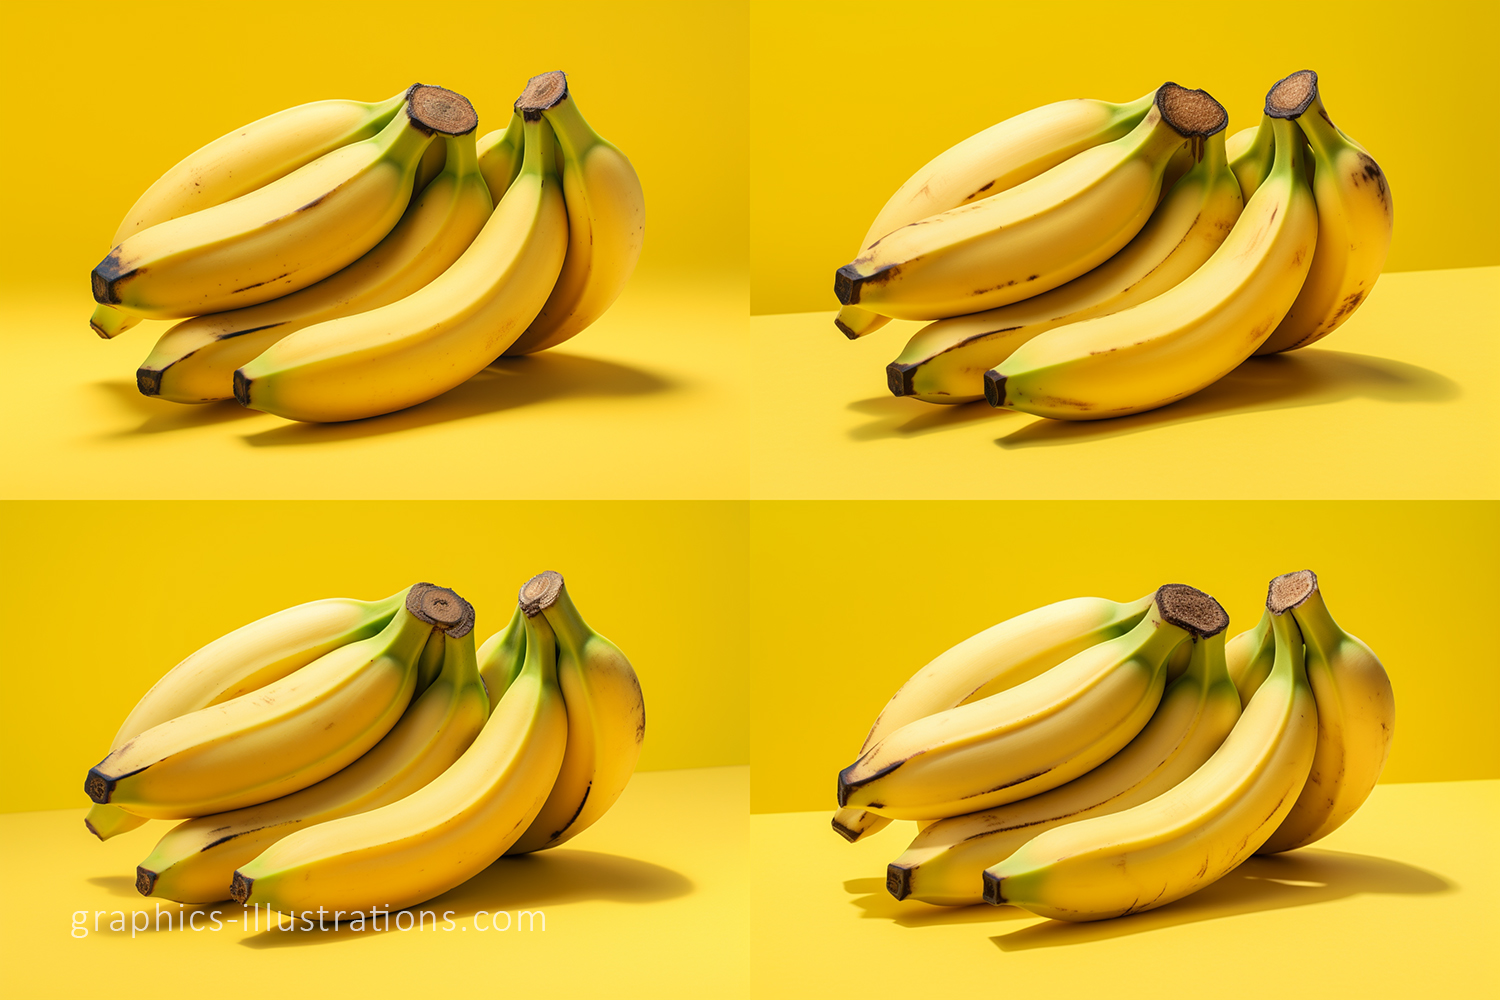 AI generated image of bananas